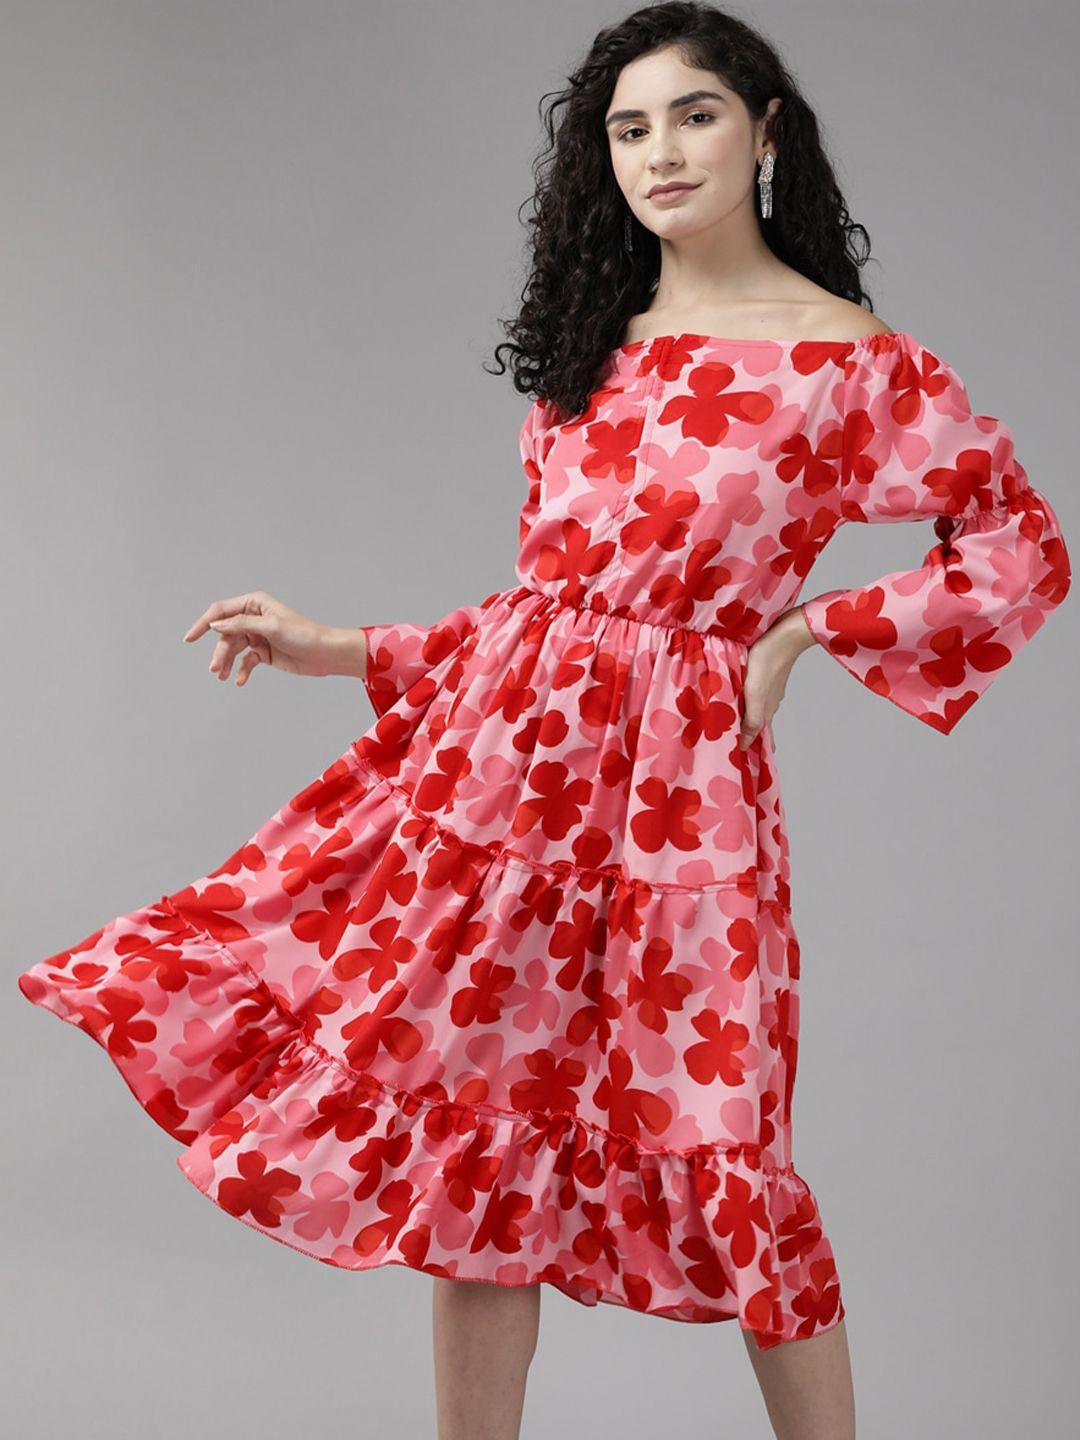 aarika floral print georgette peplum dress